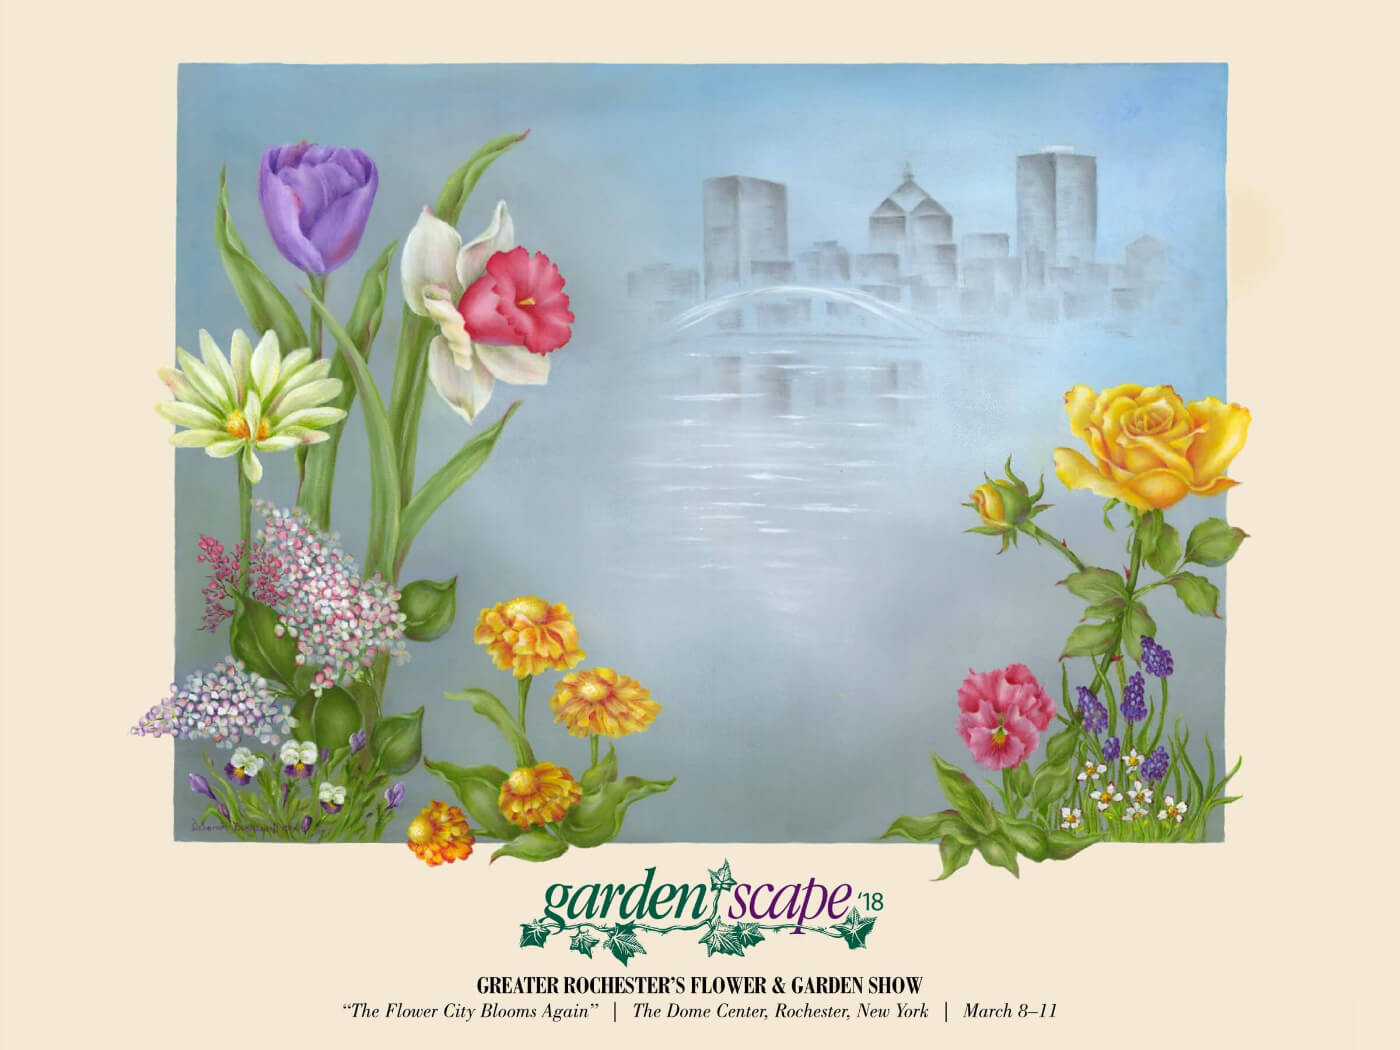 gardenscape – greater rochester's flower & garden show